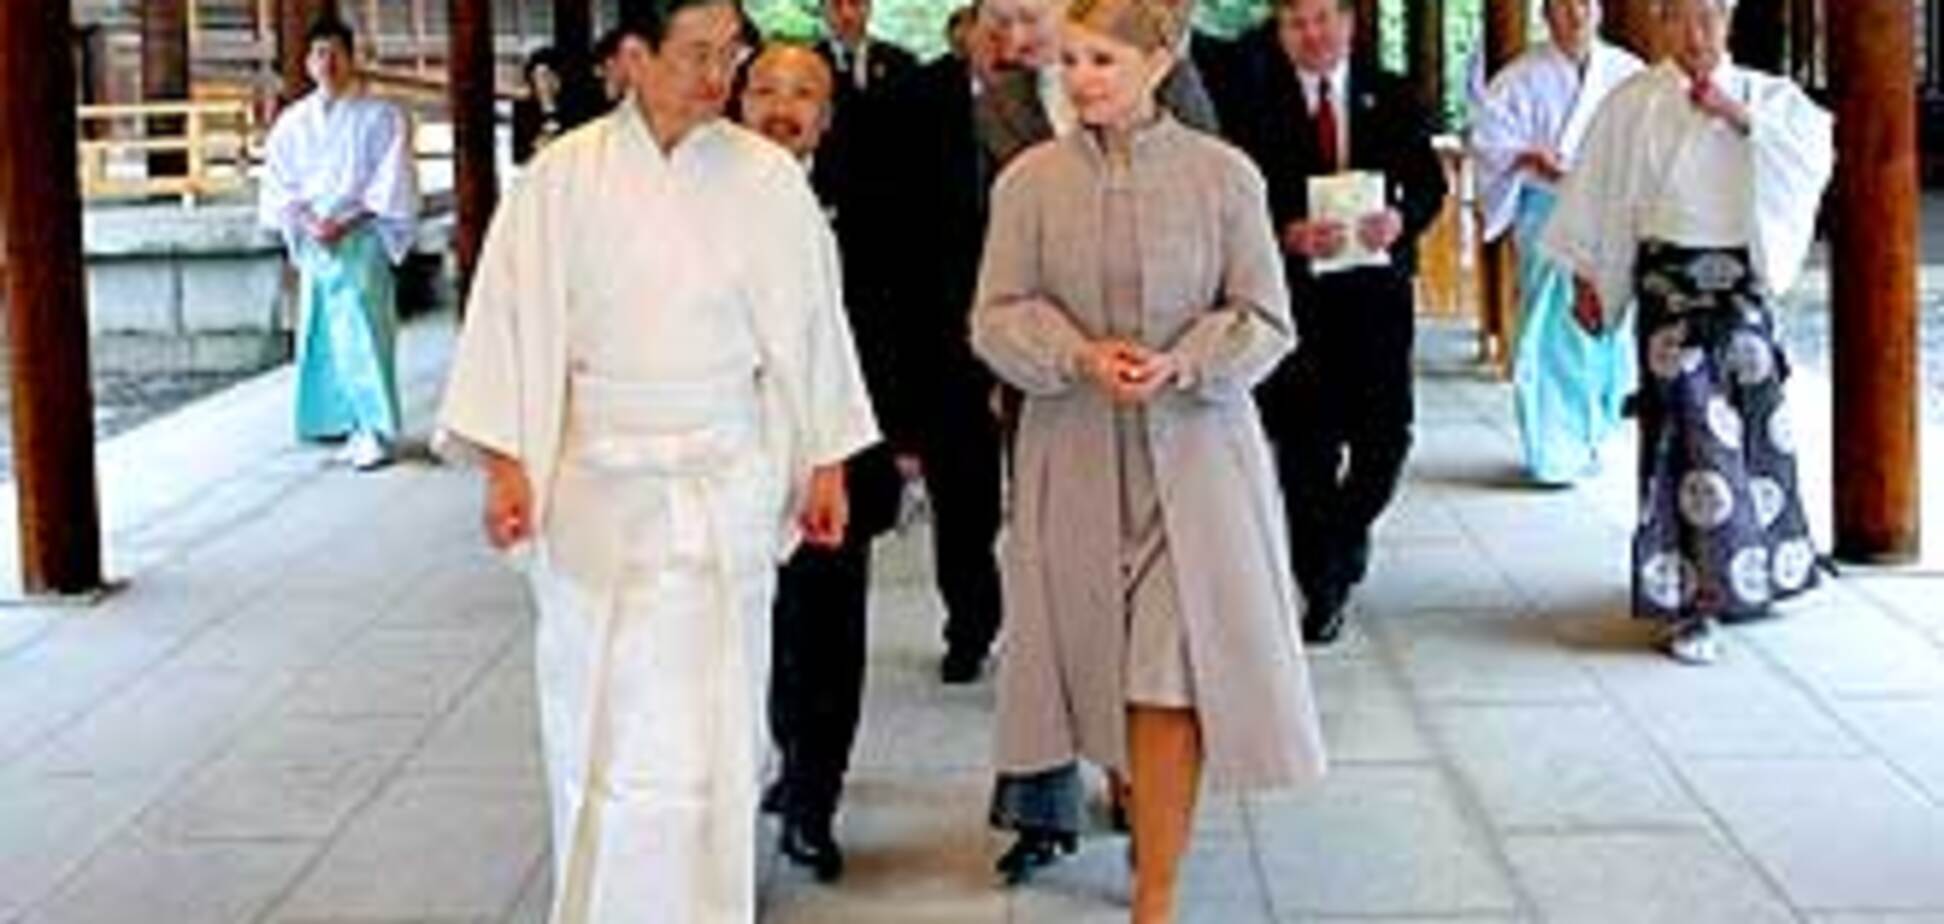 Тимошенко пояснила Японии, как выйти из кризиса